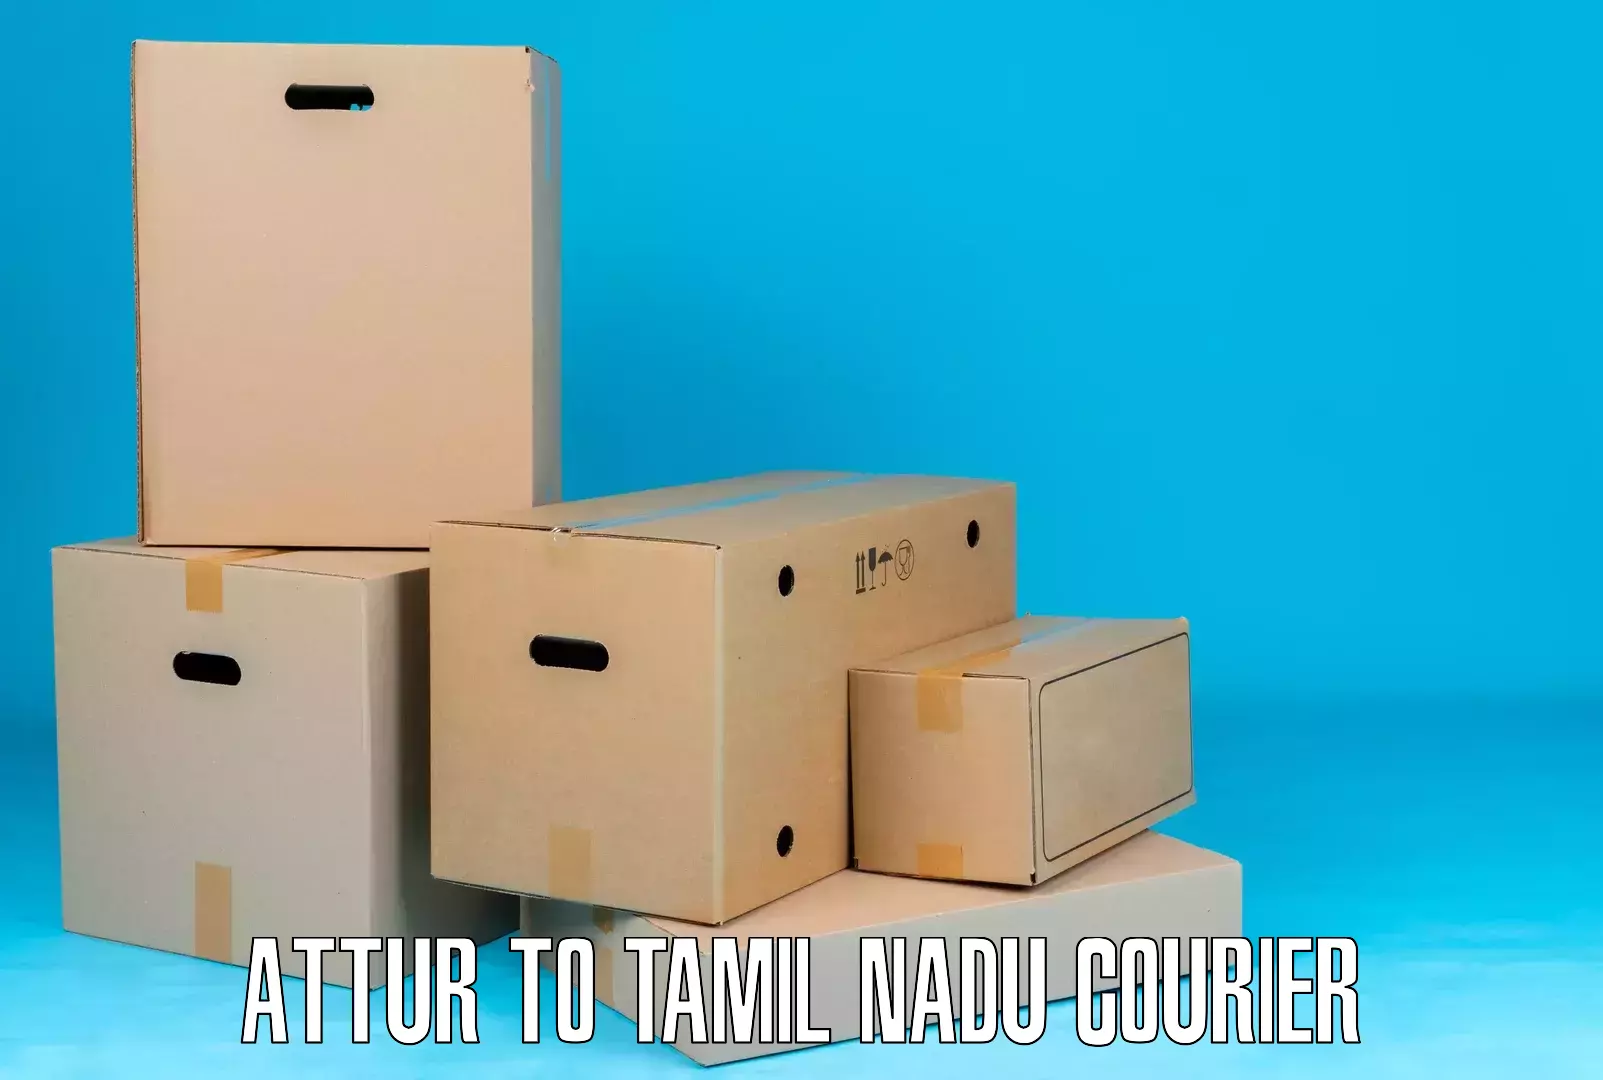 Efficient freight service Attur to Tamil Nadu